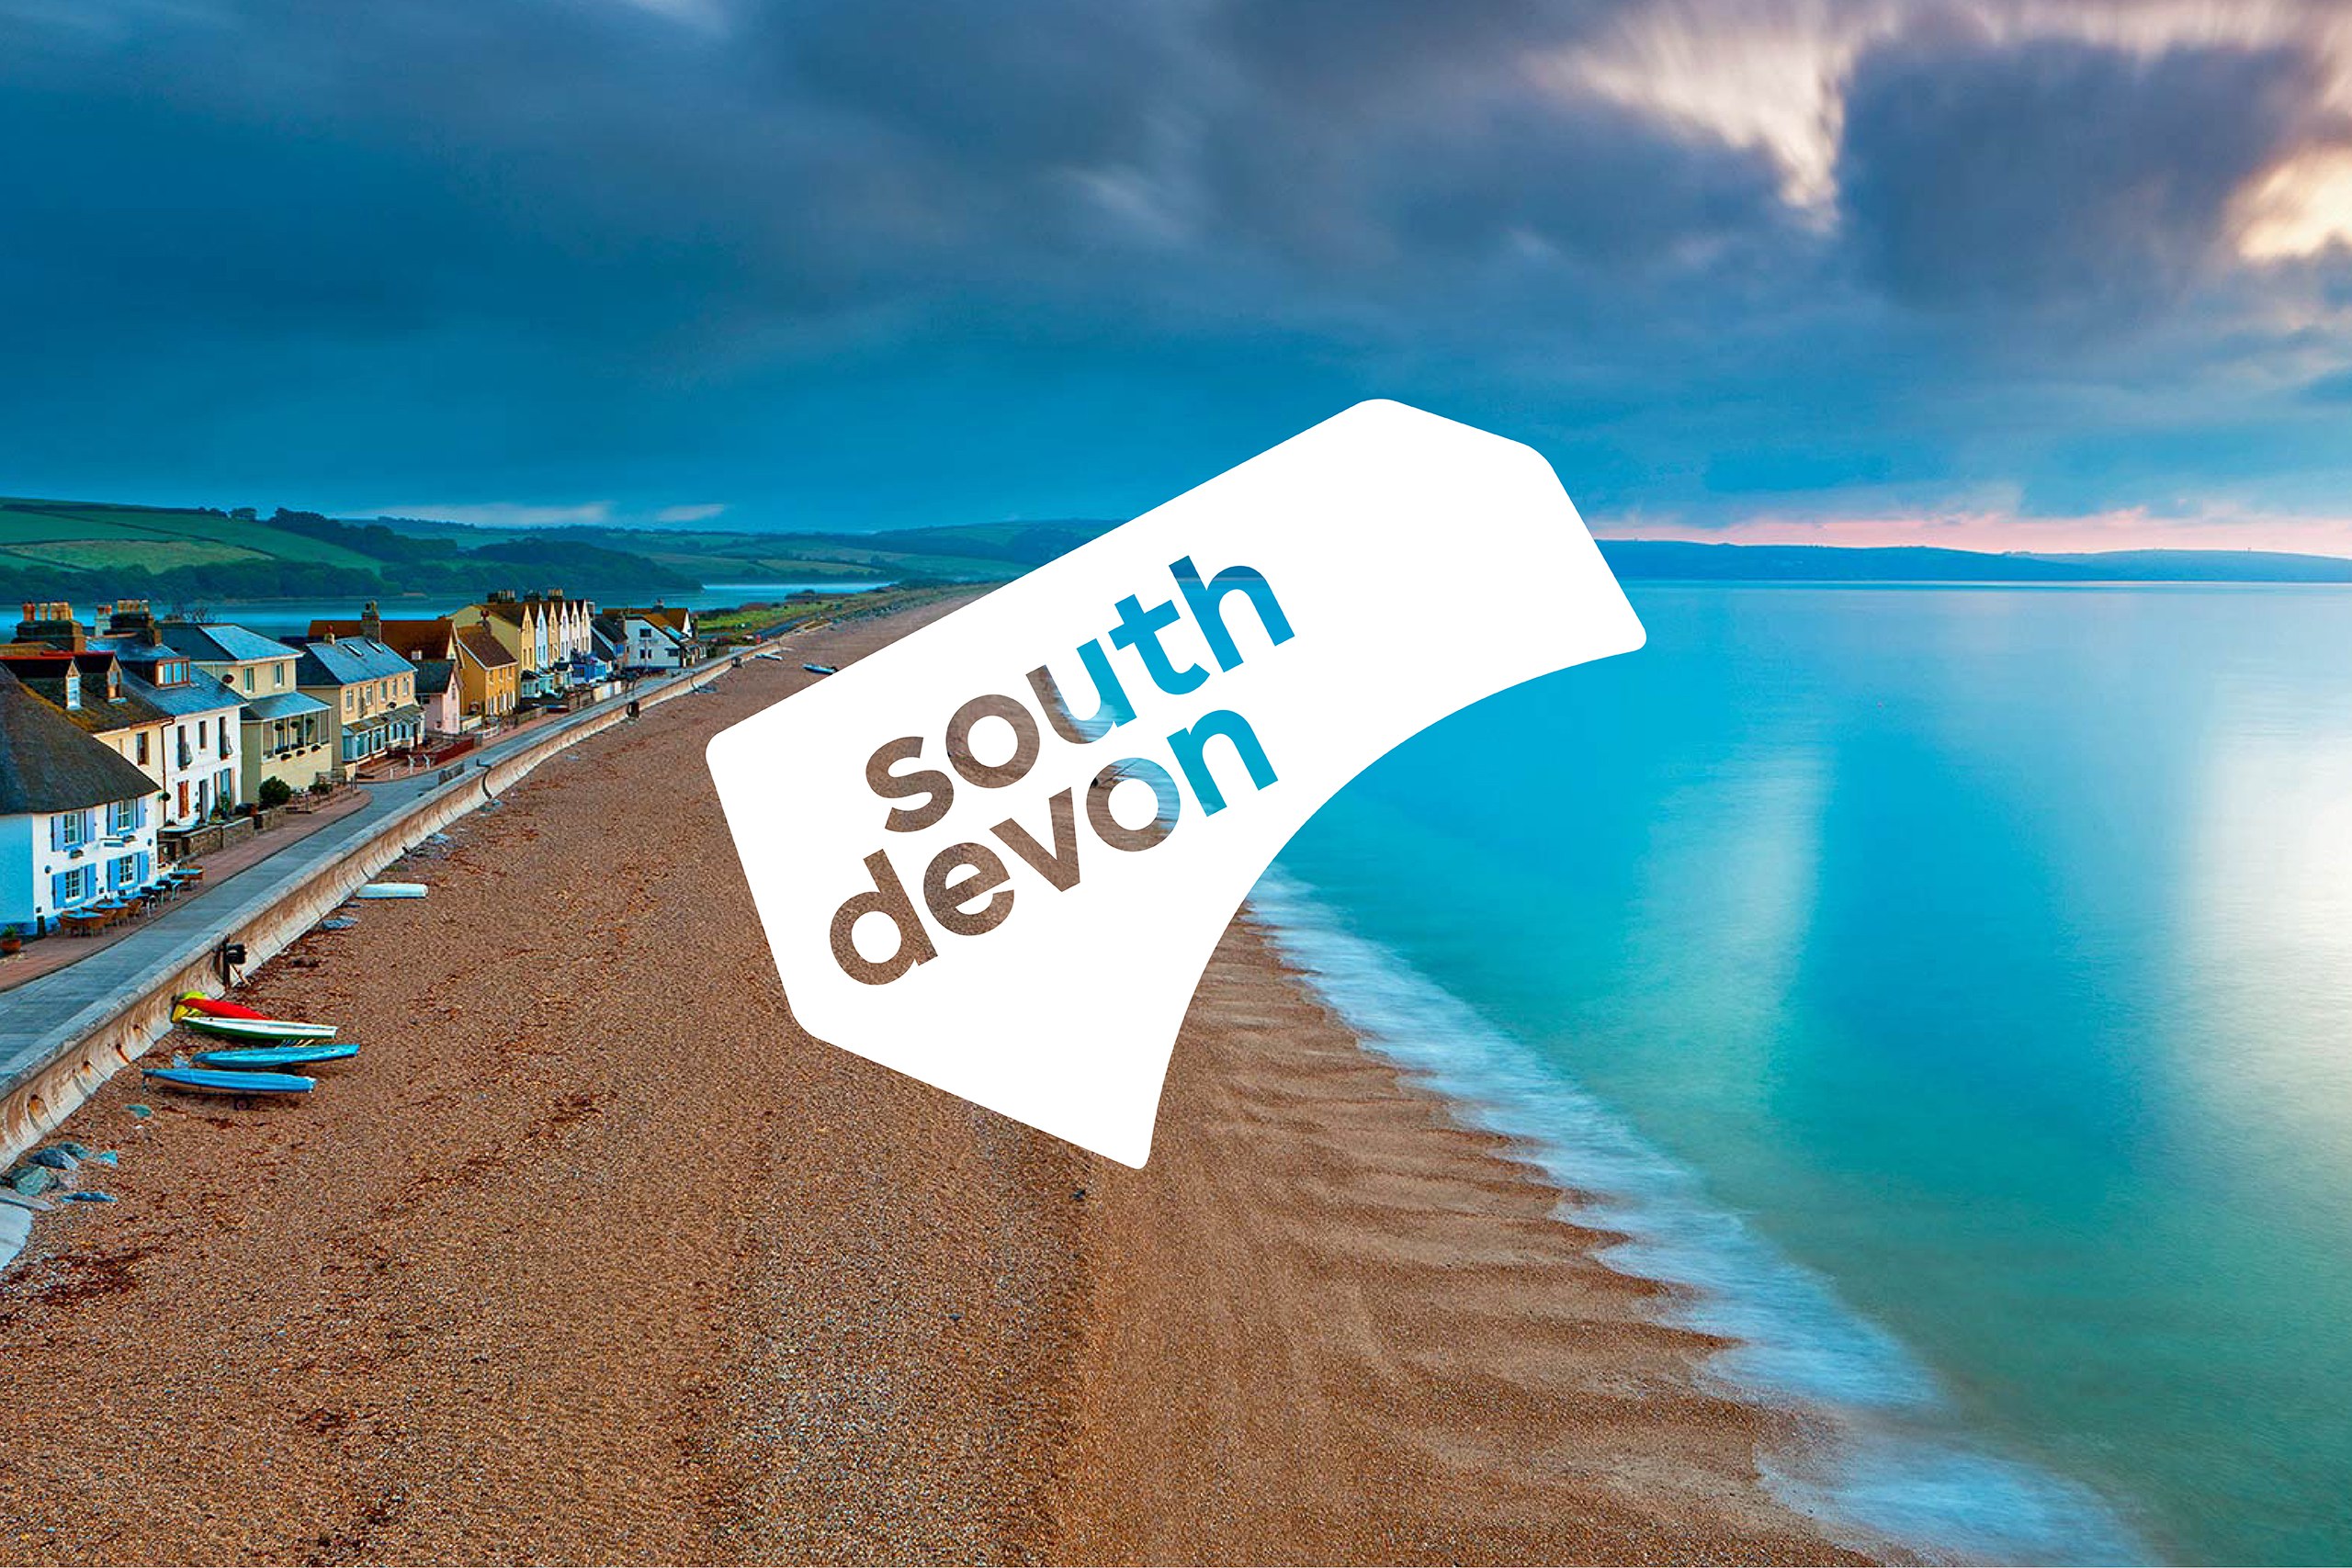 Visit South Devon - Destination brand and marketing